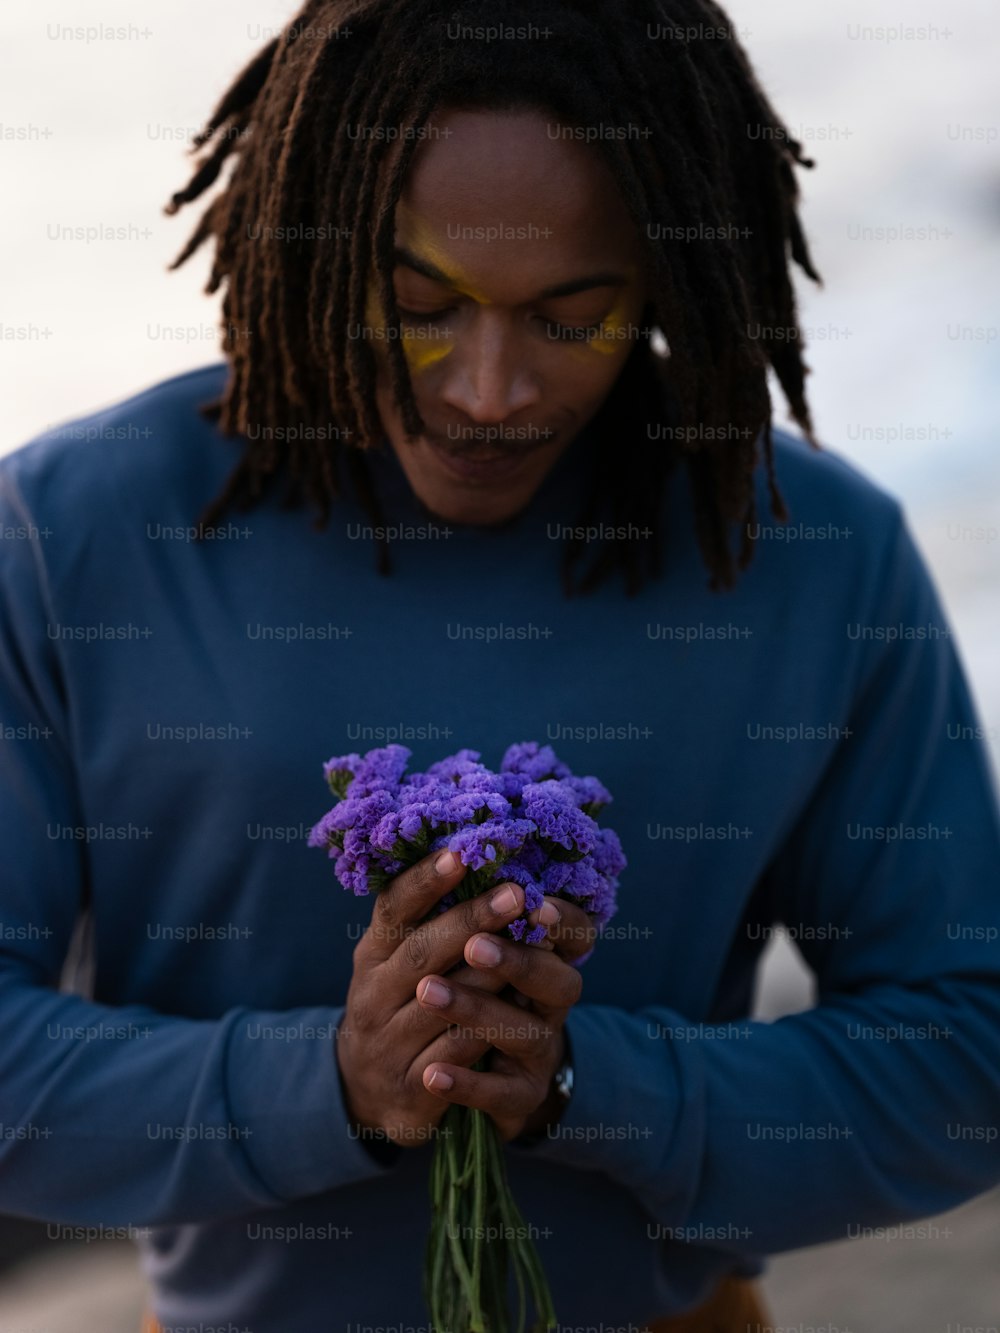 보라색 꽃 한 다발을 들고 있는 남자